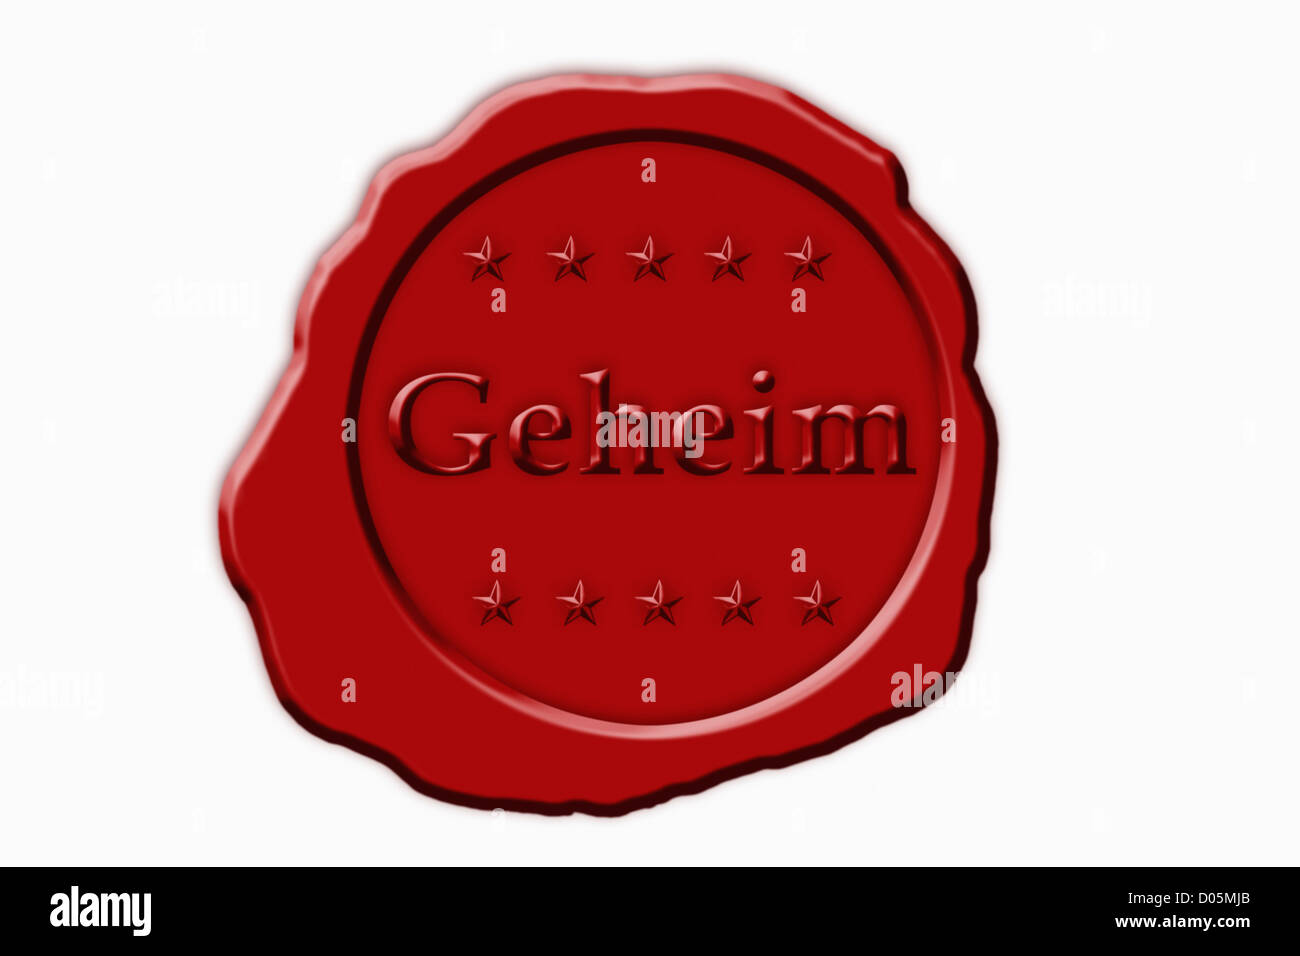 Detailansicht eines roten Siegels mit der Aufschrift Geheim | Dettaglio foto di un sigillo rosso con la scritta in tedesco segreto Foto Stock